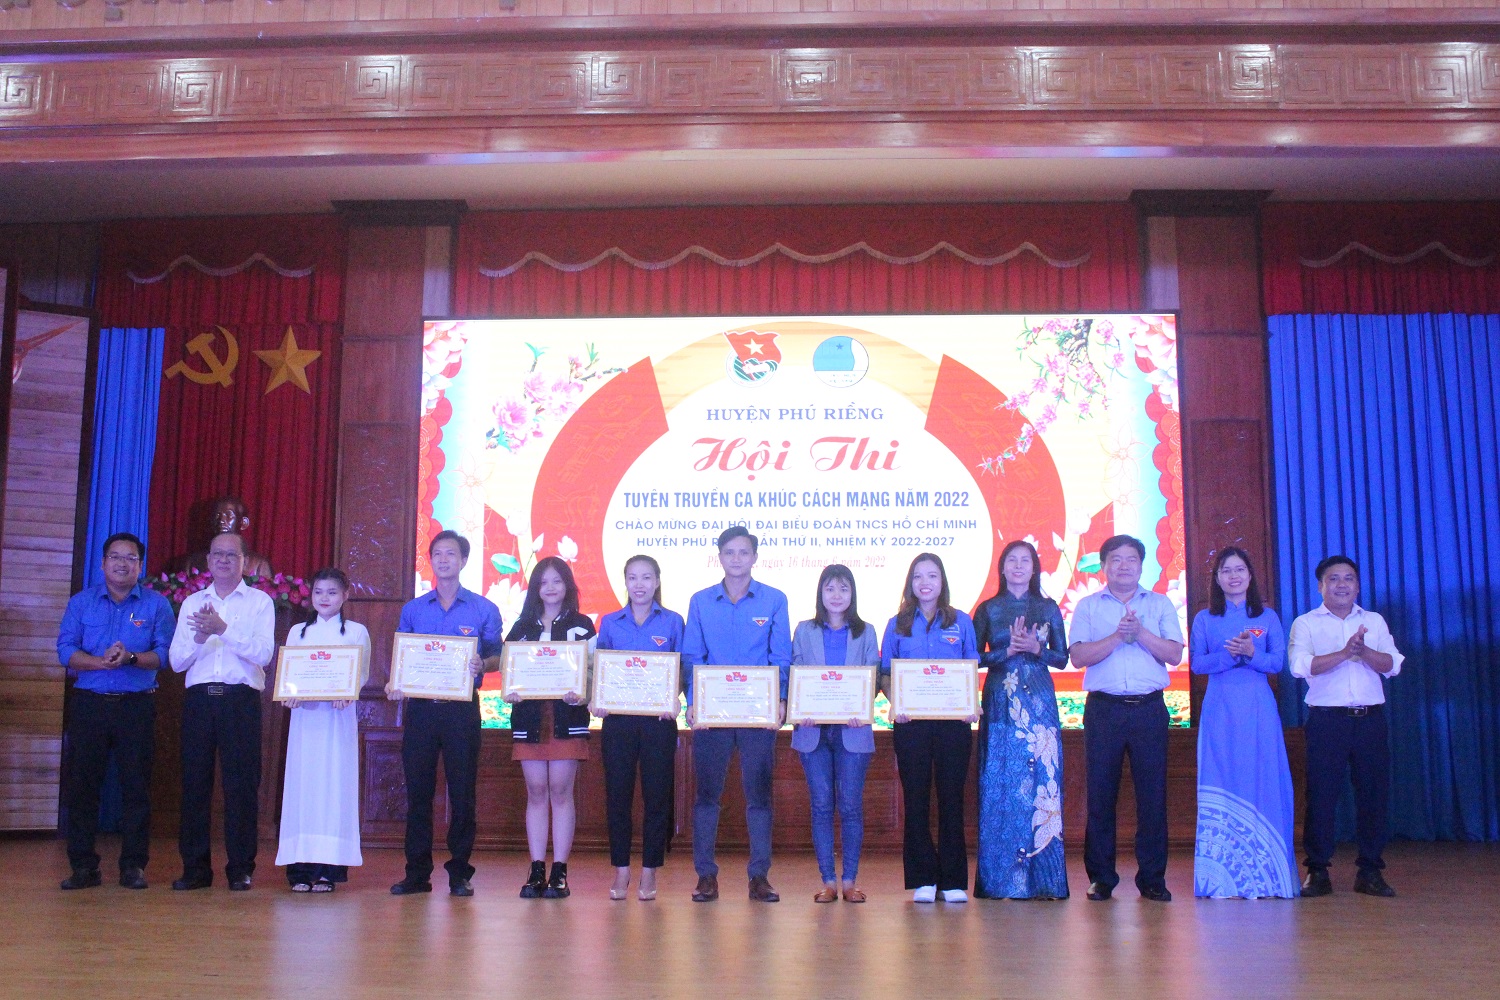 Đoàn xã Phú Riềng - Chi đoàn Khối Đảng đạt giải nhất Hội thi tuyên truyền ca khúc cách mạng năm 2022.